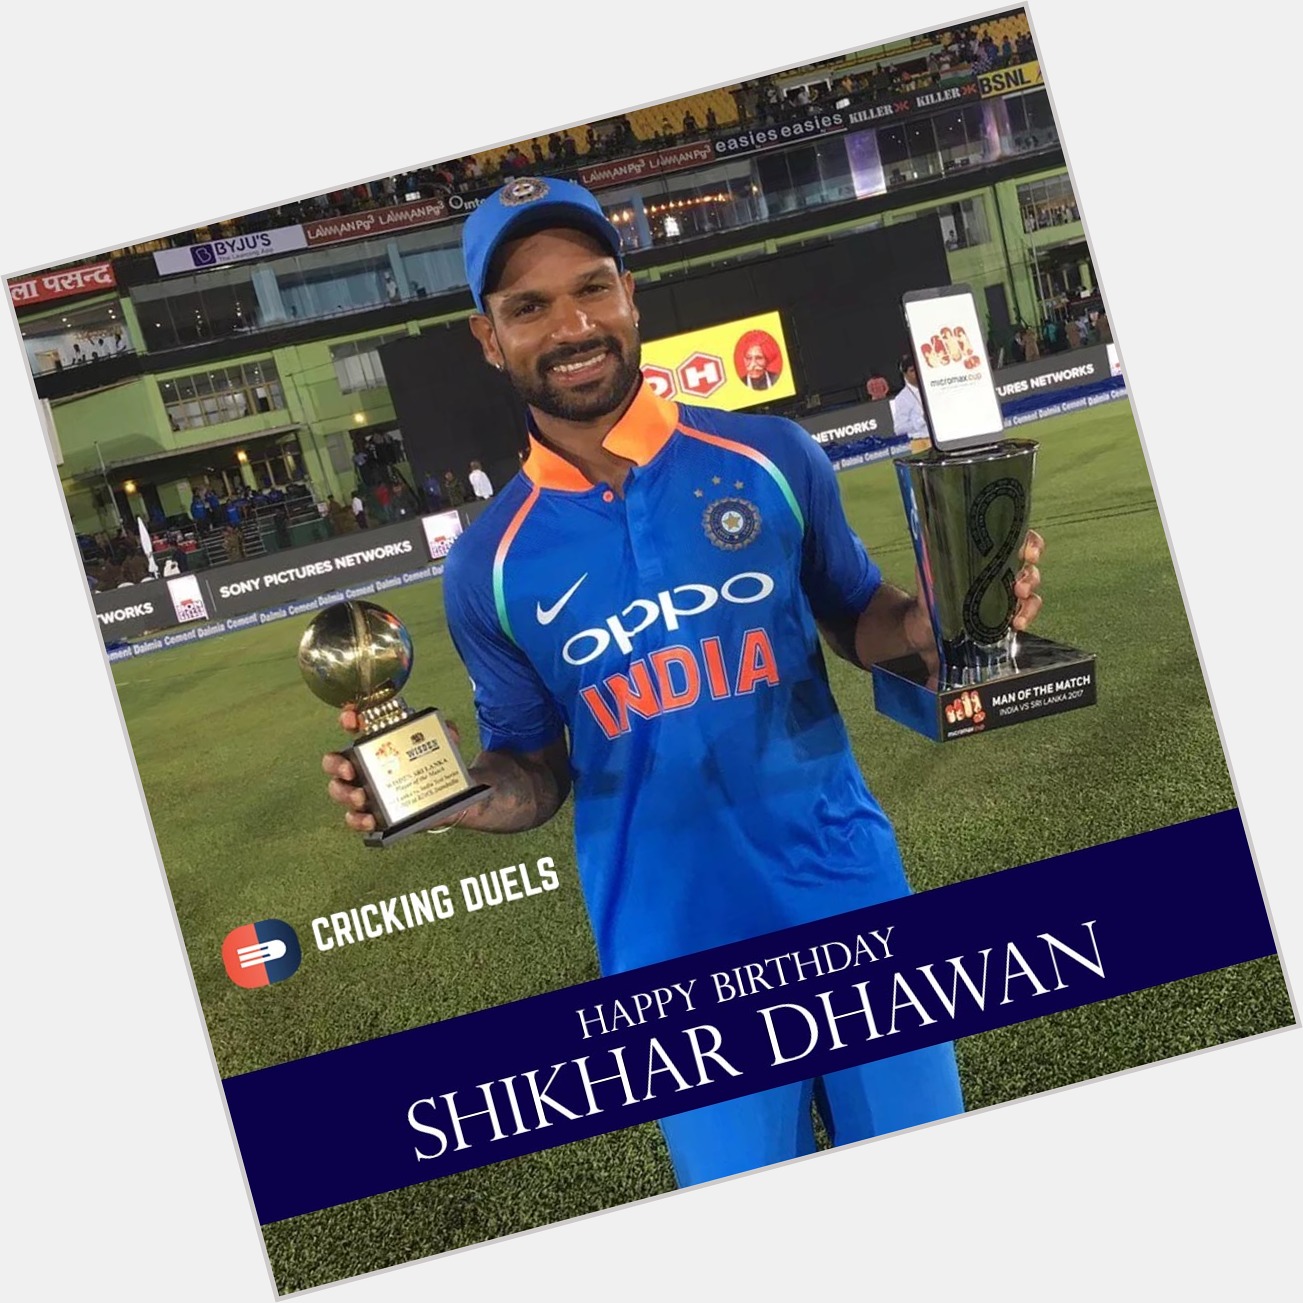 Happy birthday, Shikhar Dhawan. 